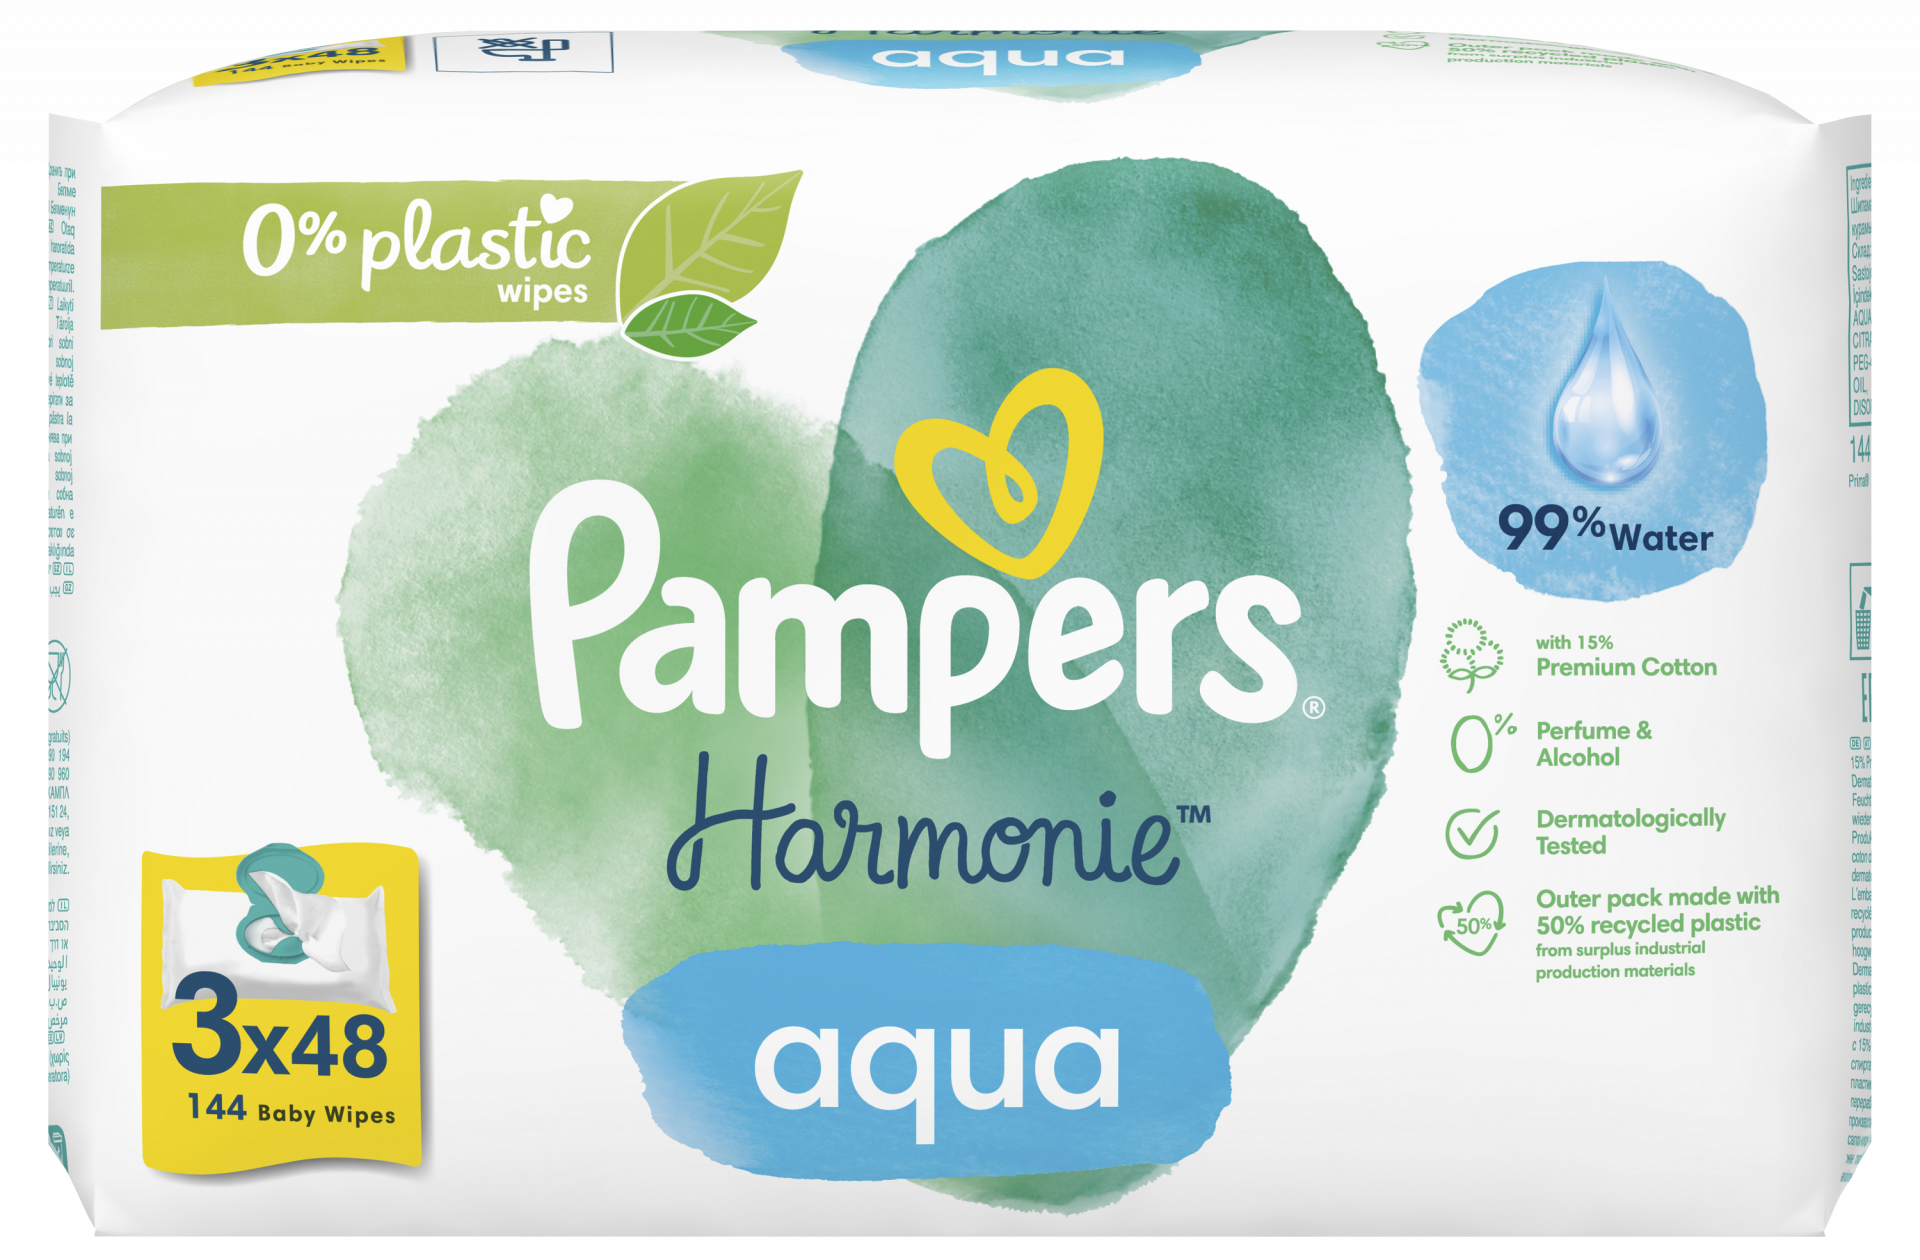 Lingettes Pampers aqua Harmonie - Pampers